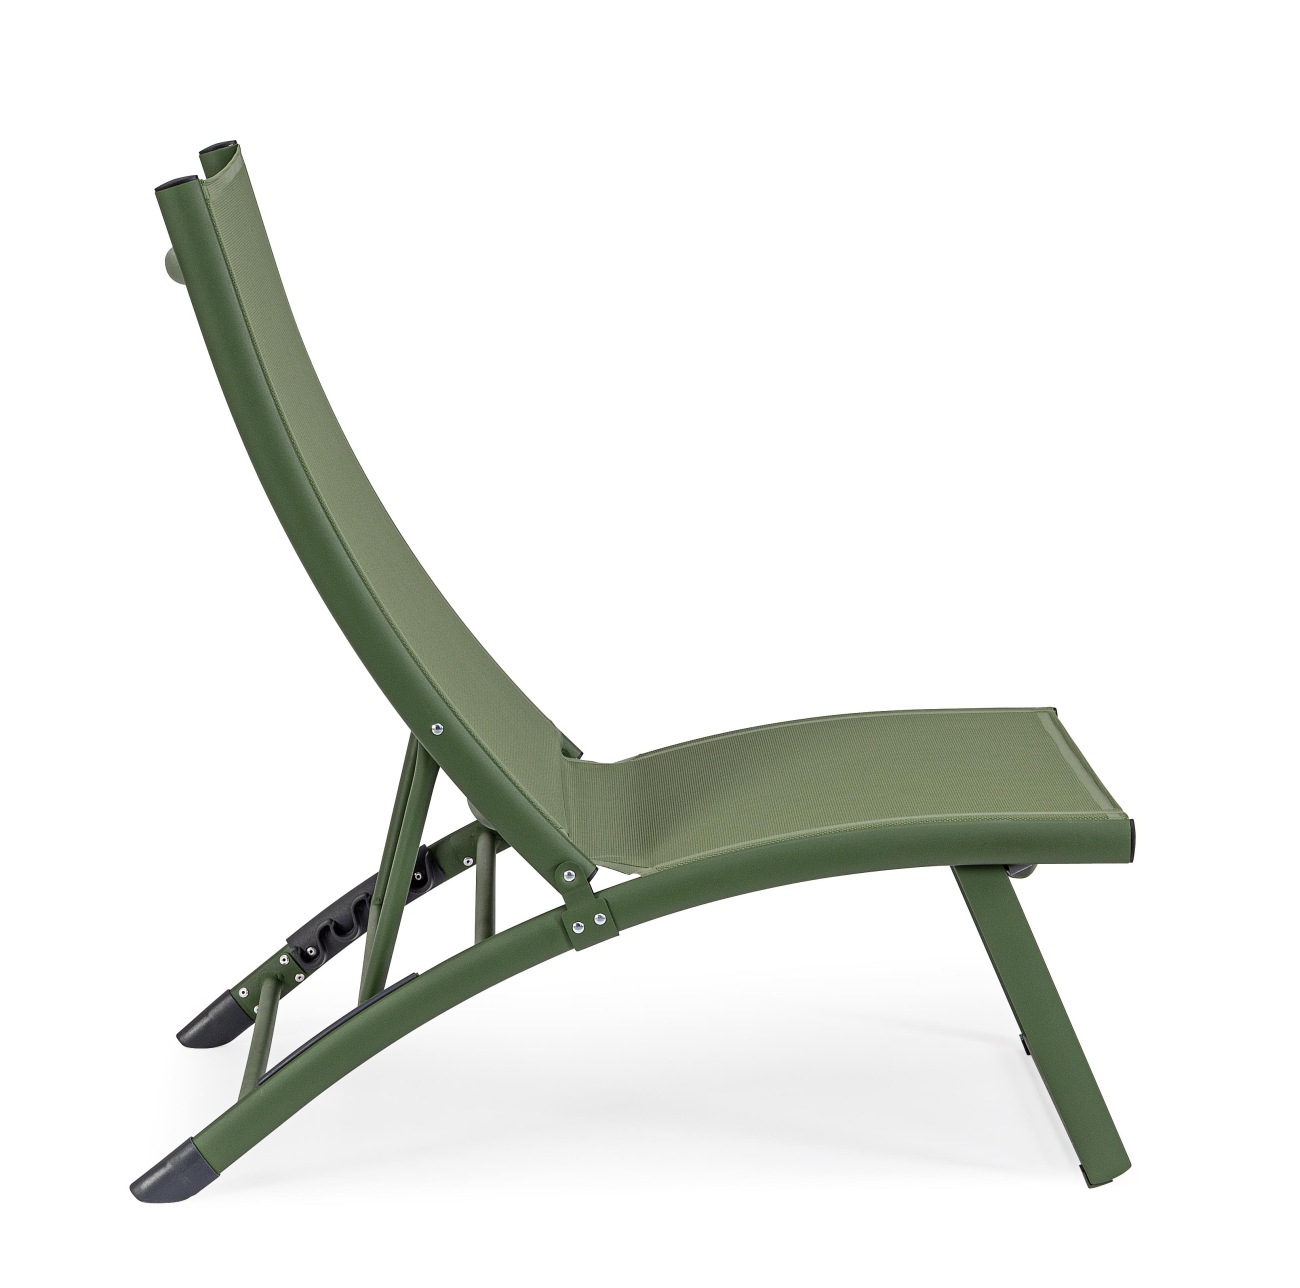 Der Loungesessel Taylor überzeugt mit seinem modernen Design. Gefertigt wurde er aus Textilene, welches einen grünen Farbton besitzt. Das Gestell ist aus Metall und hat eine grüne Farbe. Der Sessel ist klappbar.